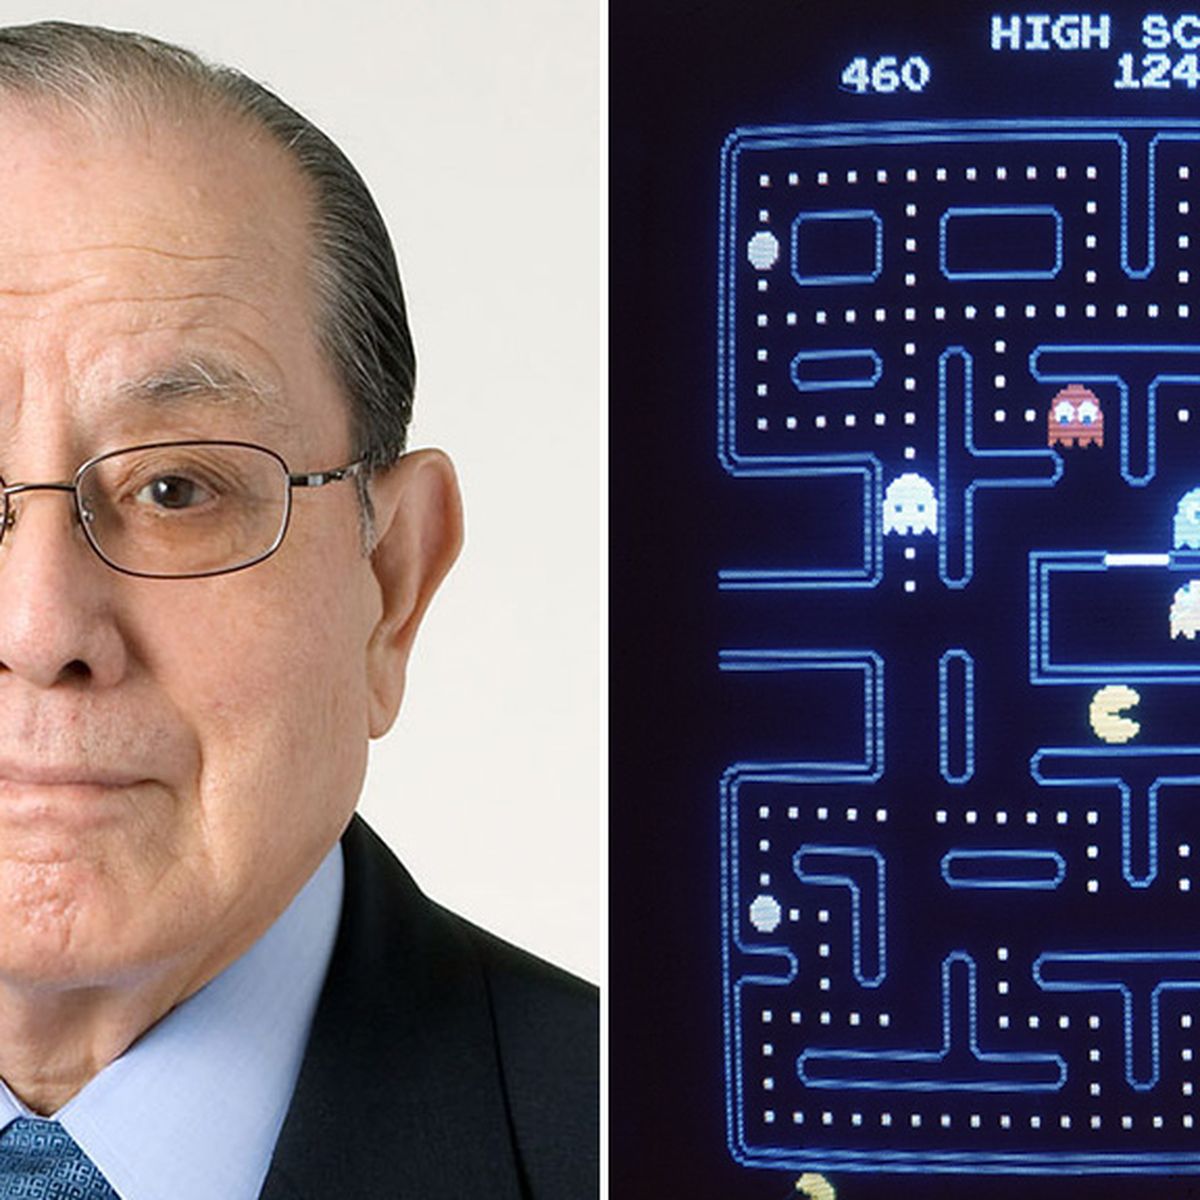 Masaya Nakamura, Whose Company Created Pac-Man, Dies at 91 - The New York  Times